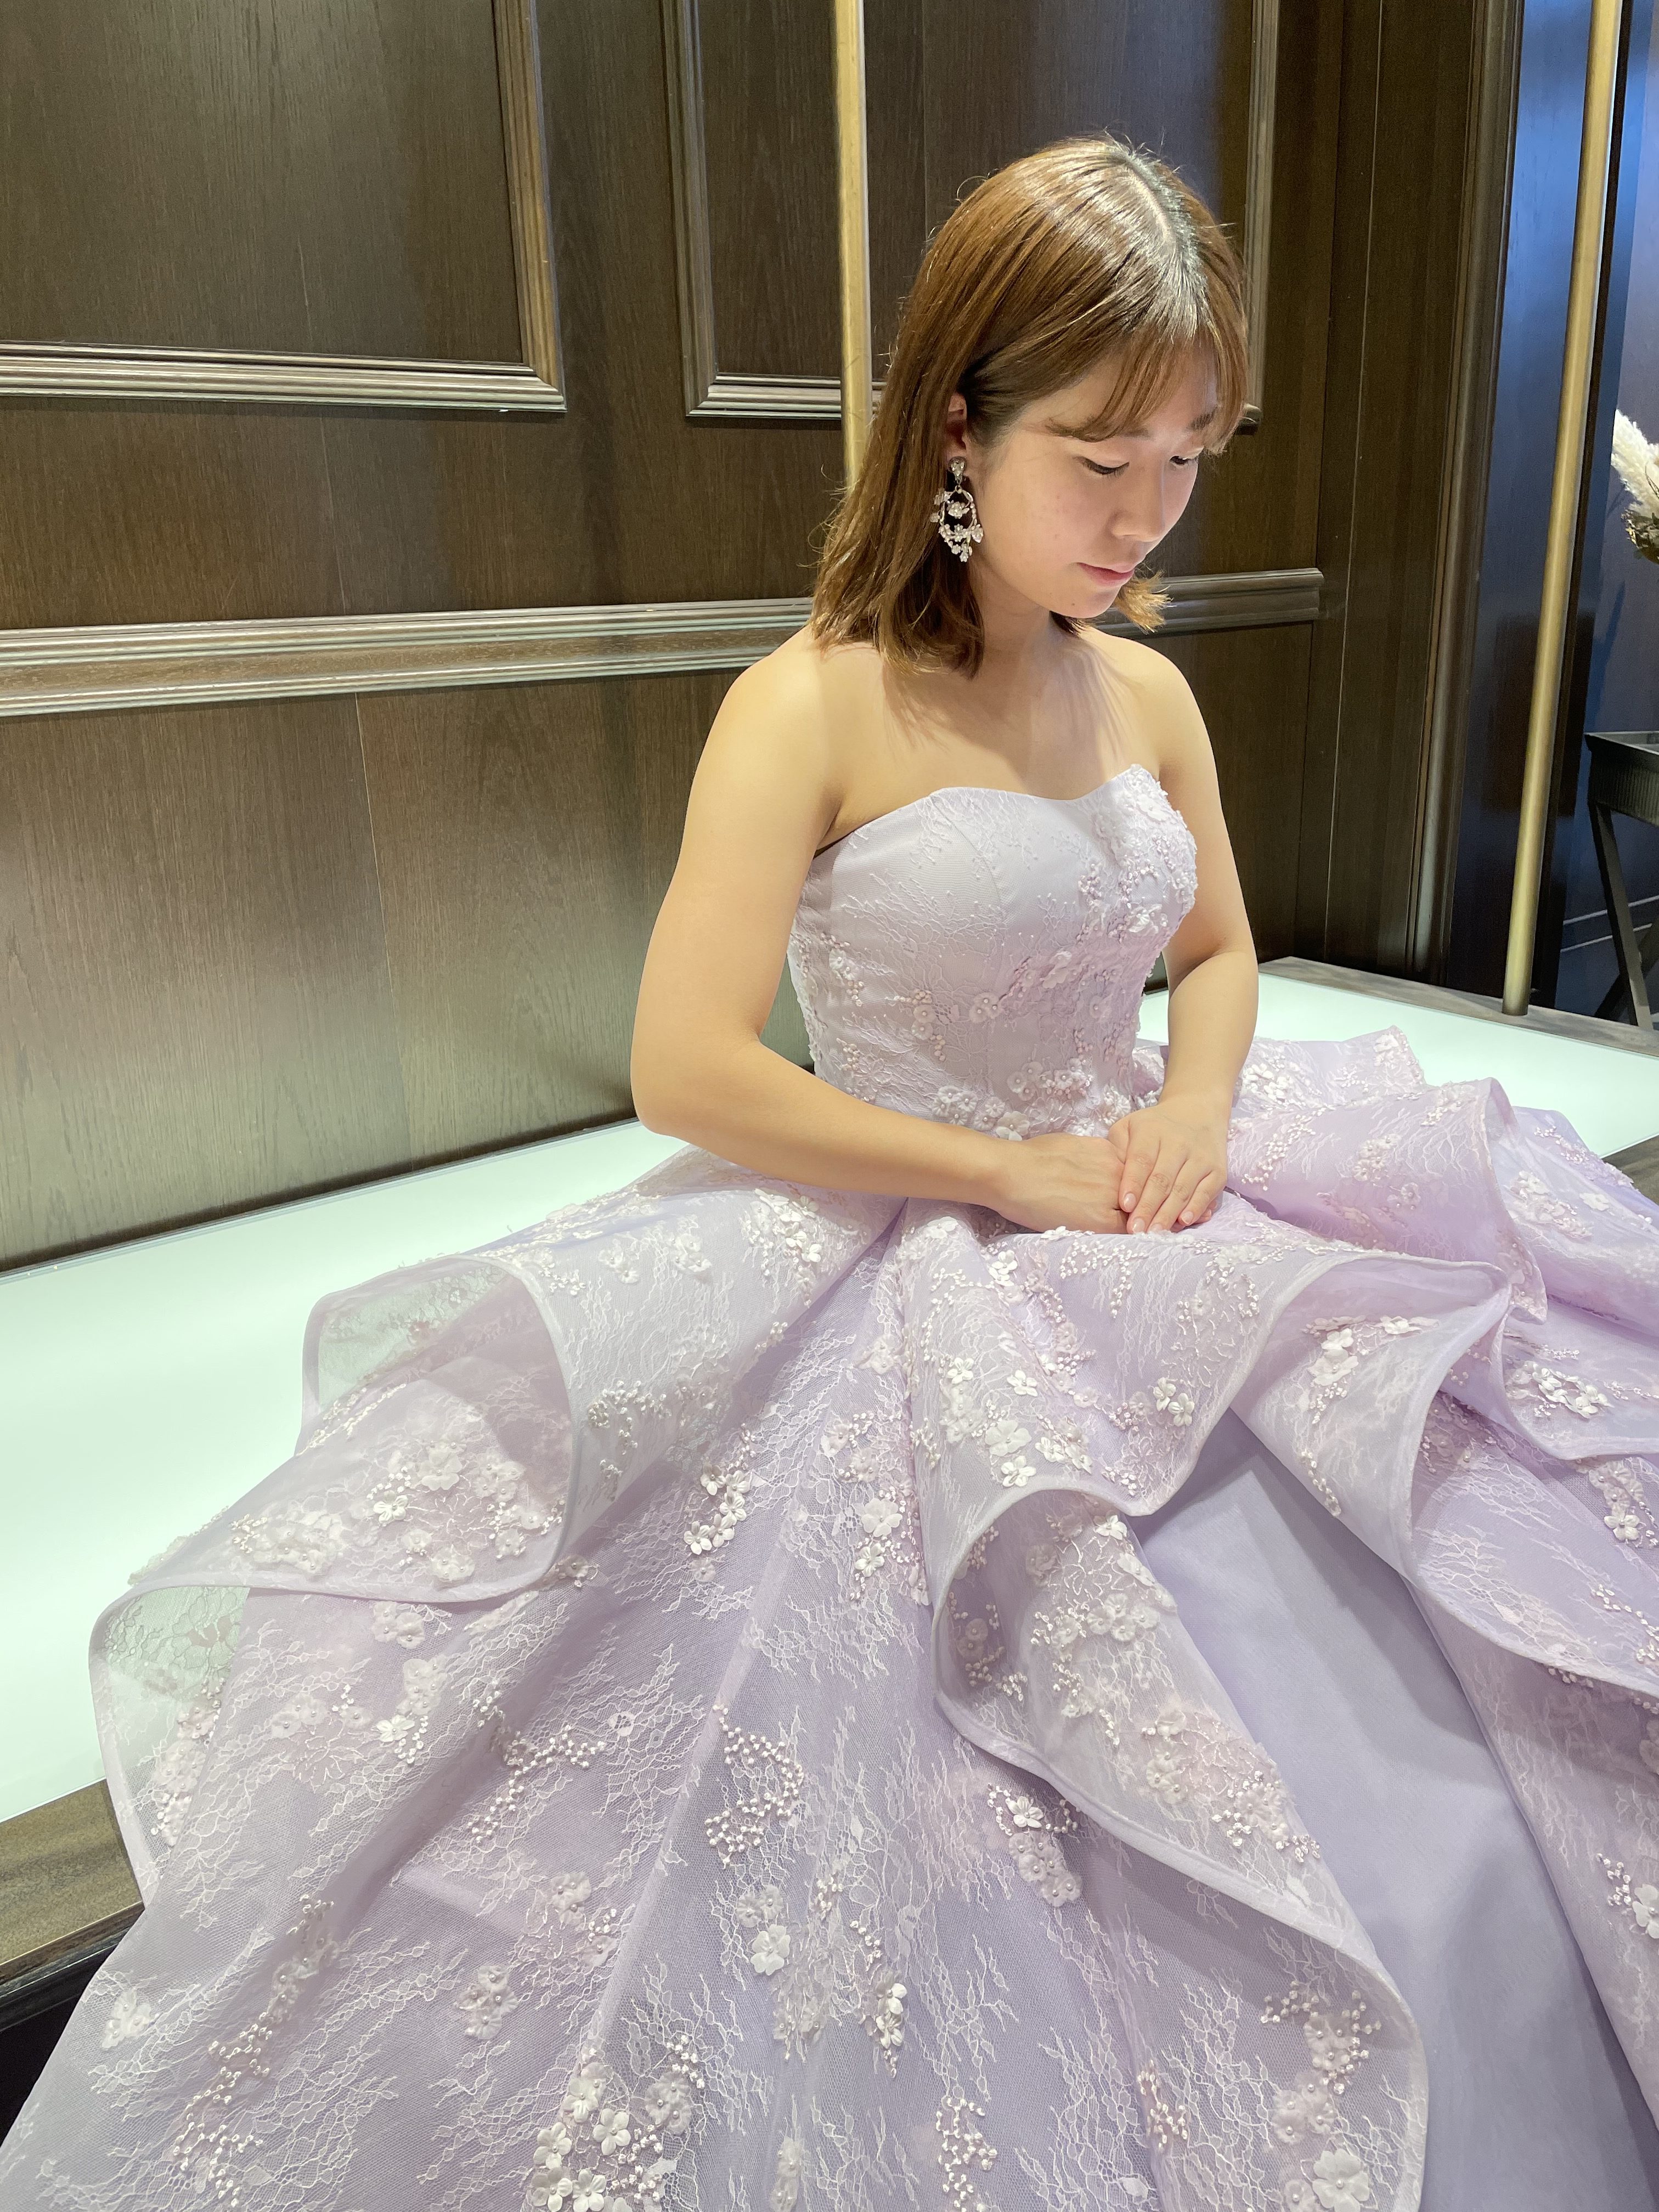 日本の花嫁様の為に作られたJUNOオリジナルのラベンダーカラーのドレス